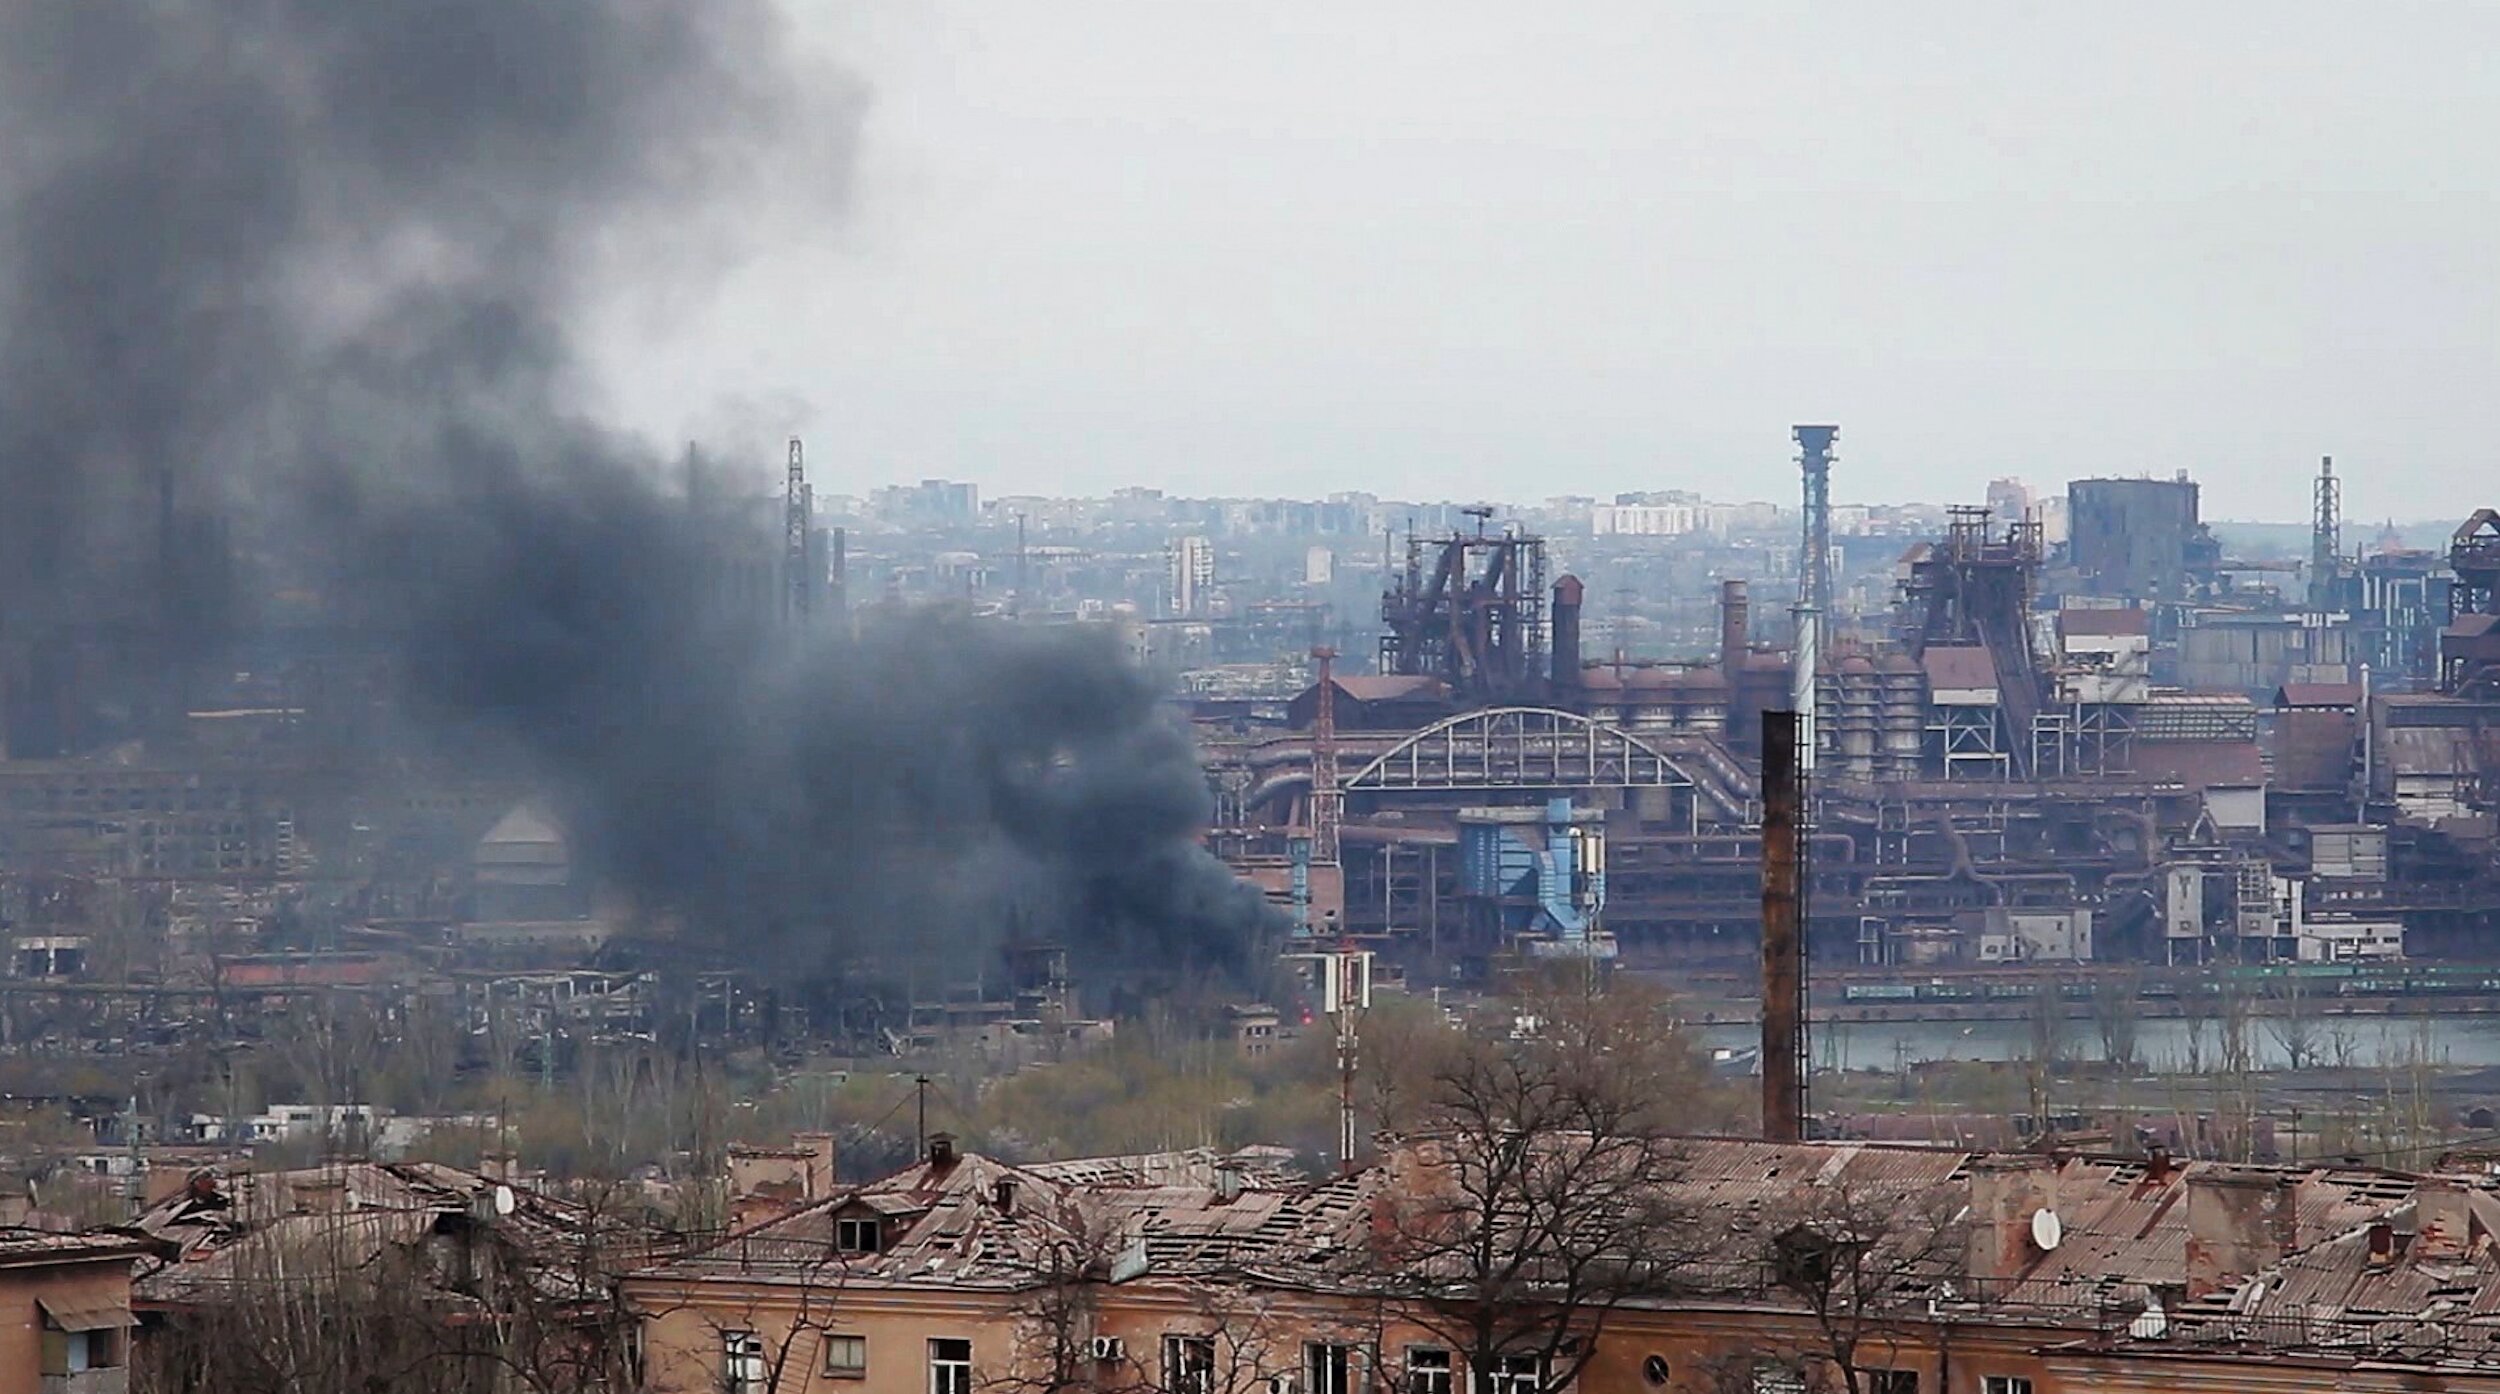 Videófelvételről készített képen fekete füst száll a magasba a mariupoli Azovsztal erőműnél 2022. május 3-án.